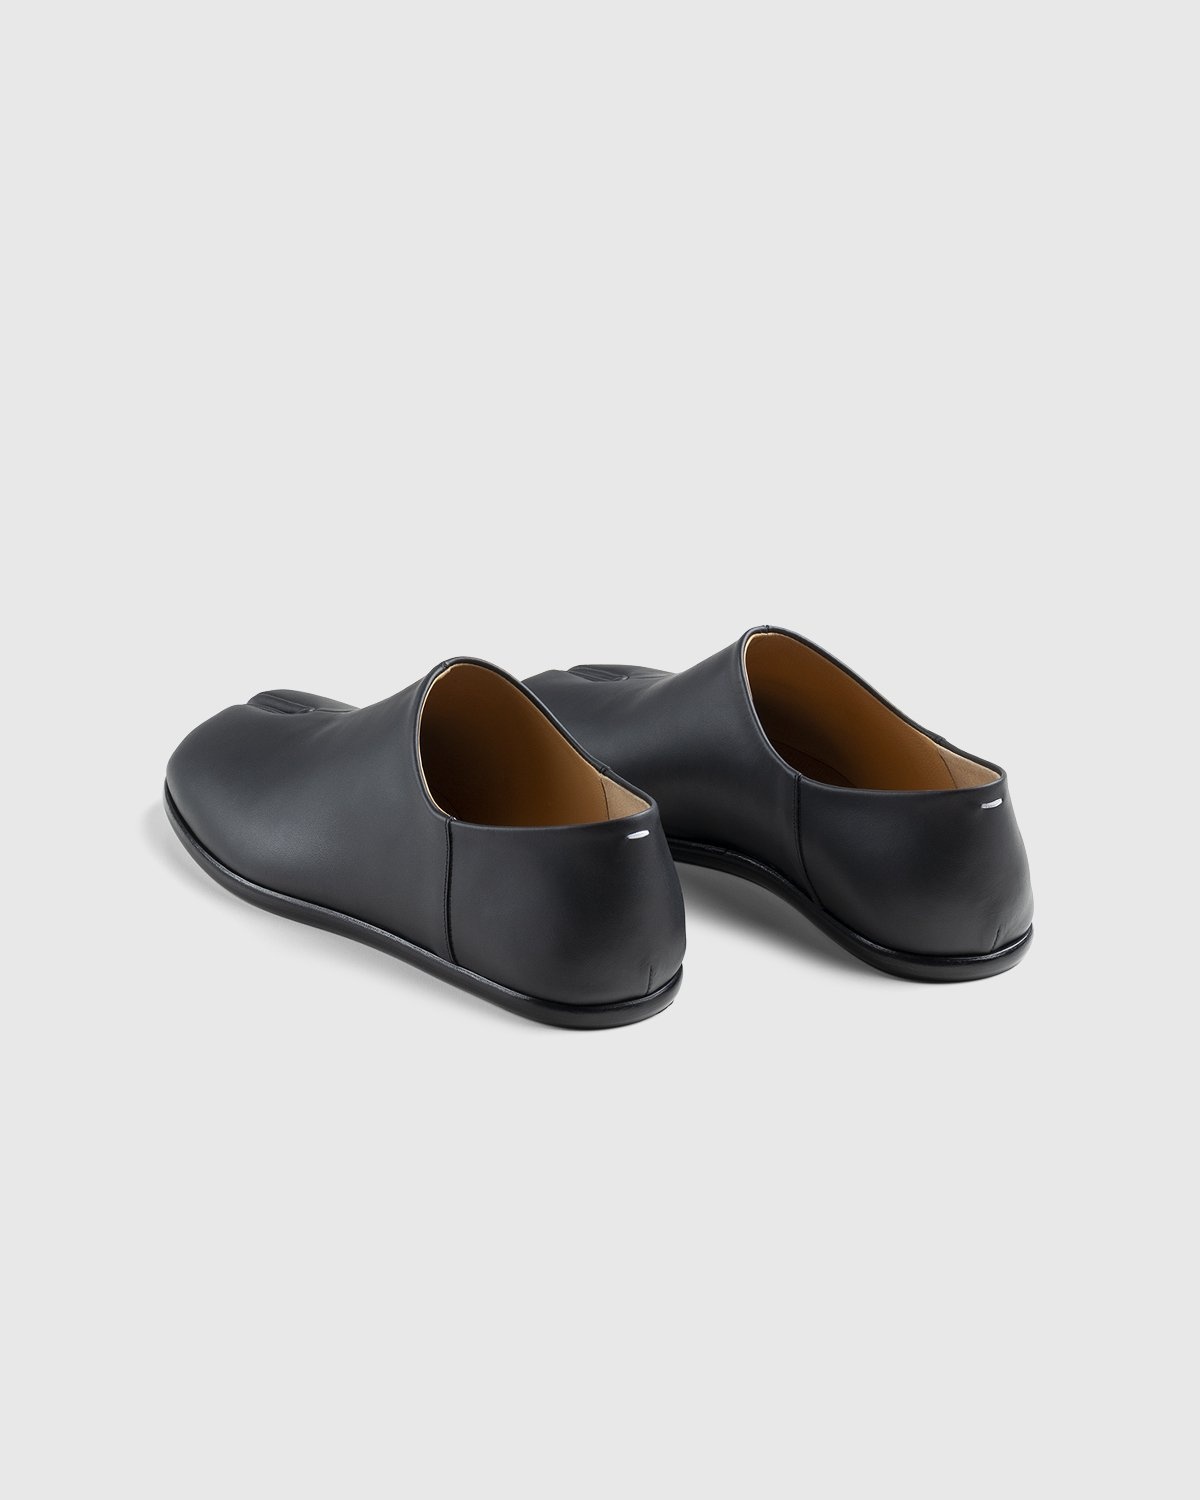 Maison Margiela – Tabi Slip On Black - Shoes - Black - Image 4